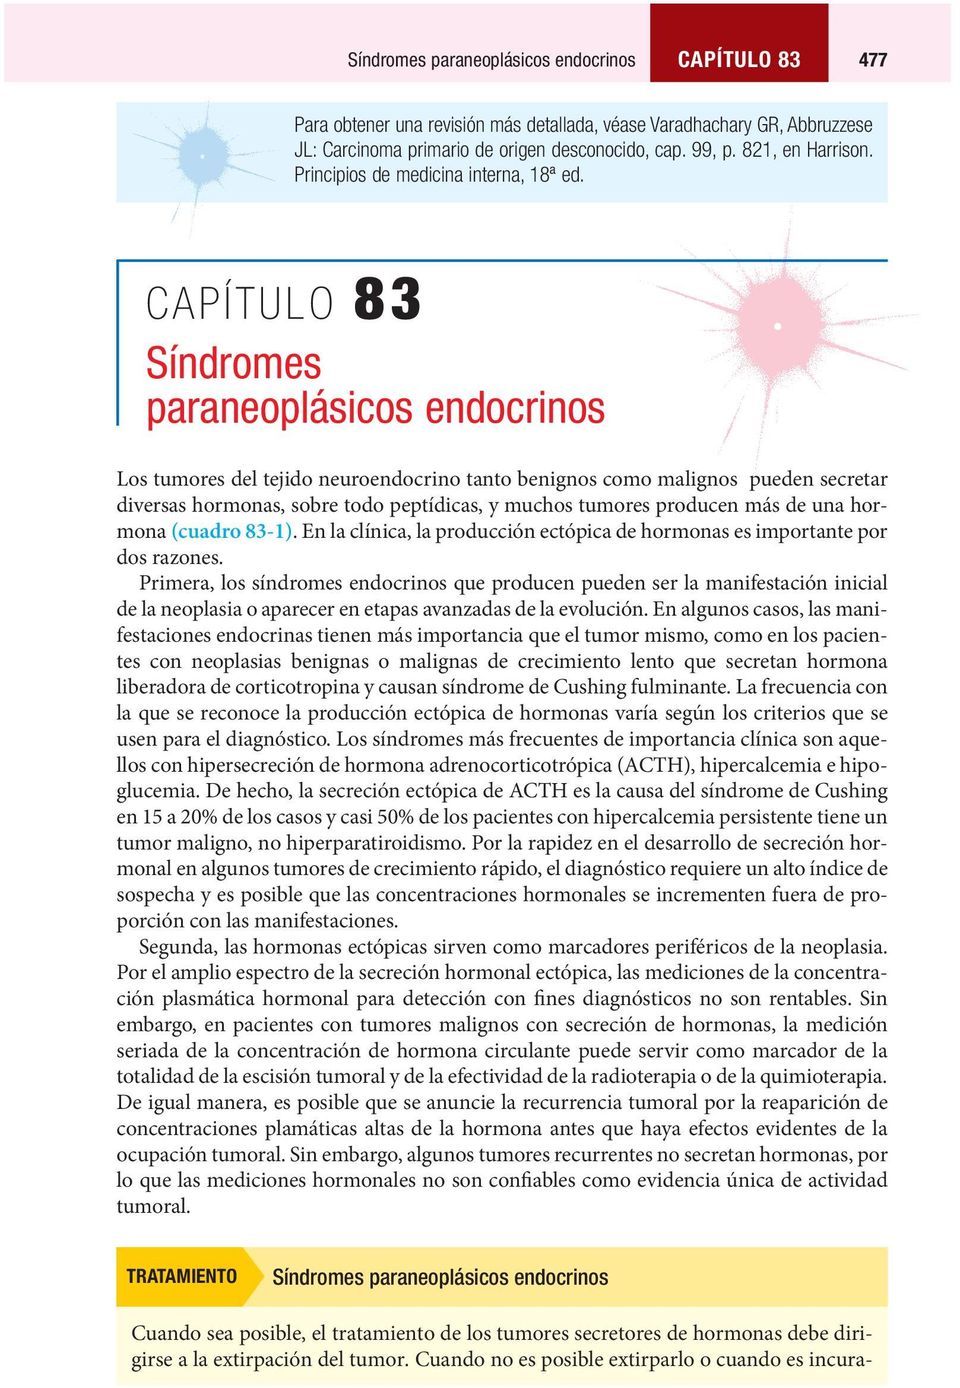 CAPÍTULO 83 Síndromes paraneoplásicos endocrinos Los tumores del tejido neuroendocrino tanto benignos como malignos pueden secretar diversas hormonas, sobre todo peptídicas, y muchos tumores producen